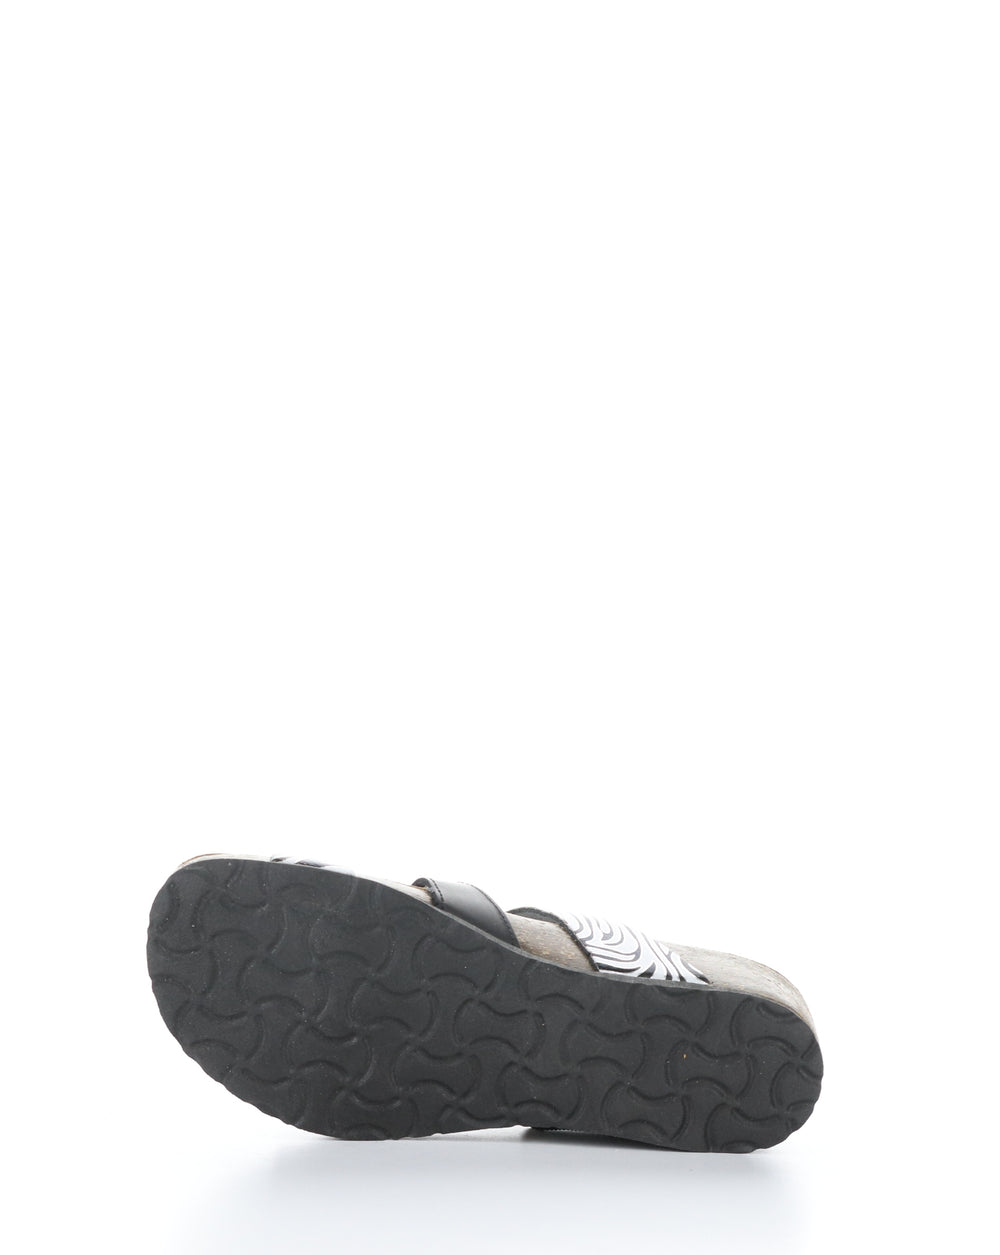 LUZZI BLACK/ZEBRA Slip-on Sandals